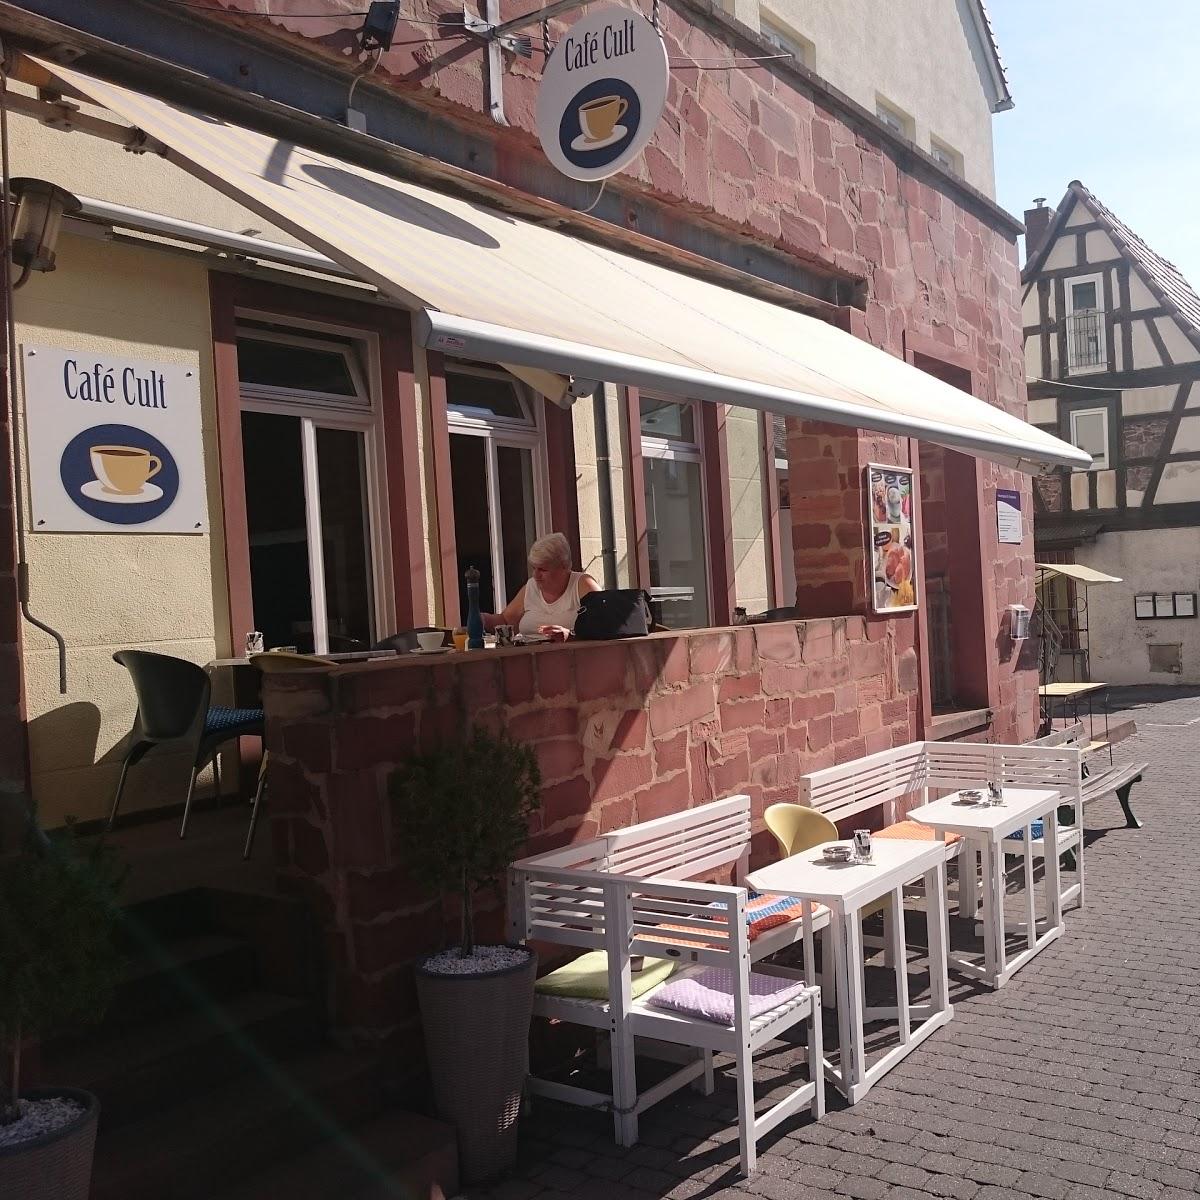 Restaurant "Cafe Cult" in Dreieich